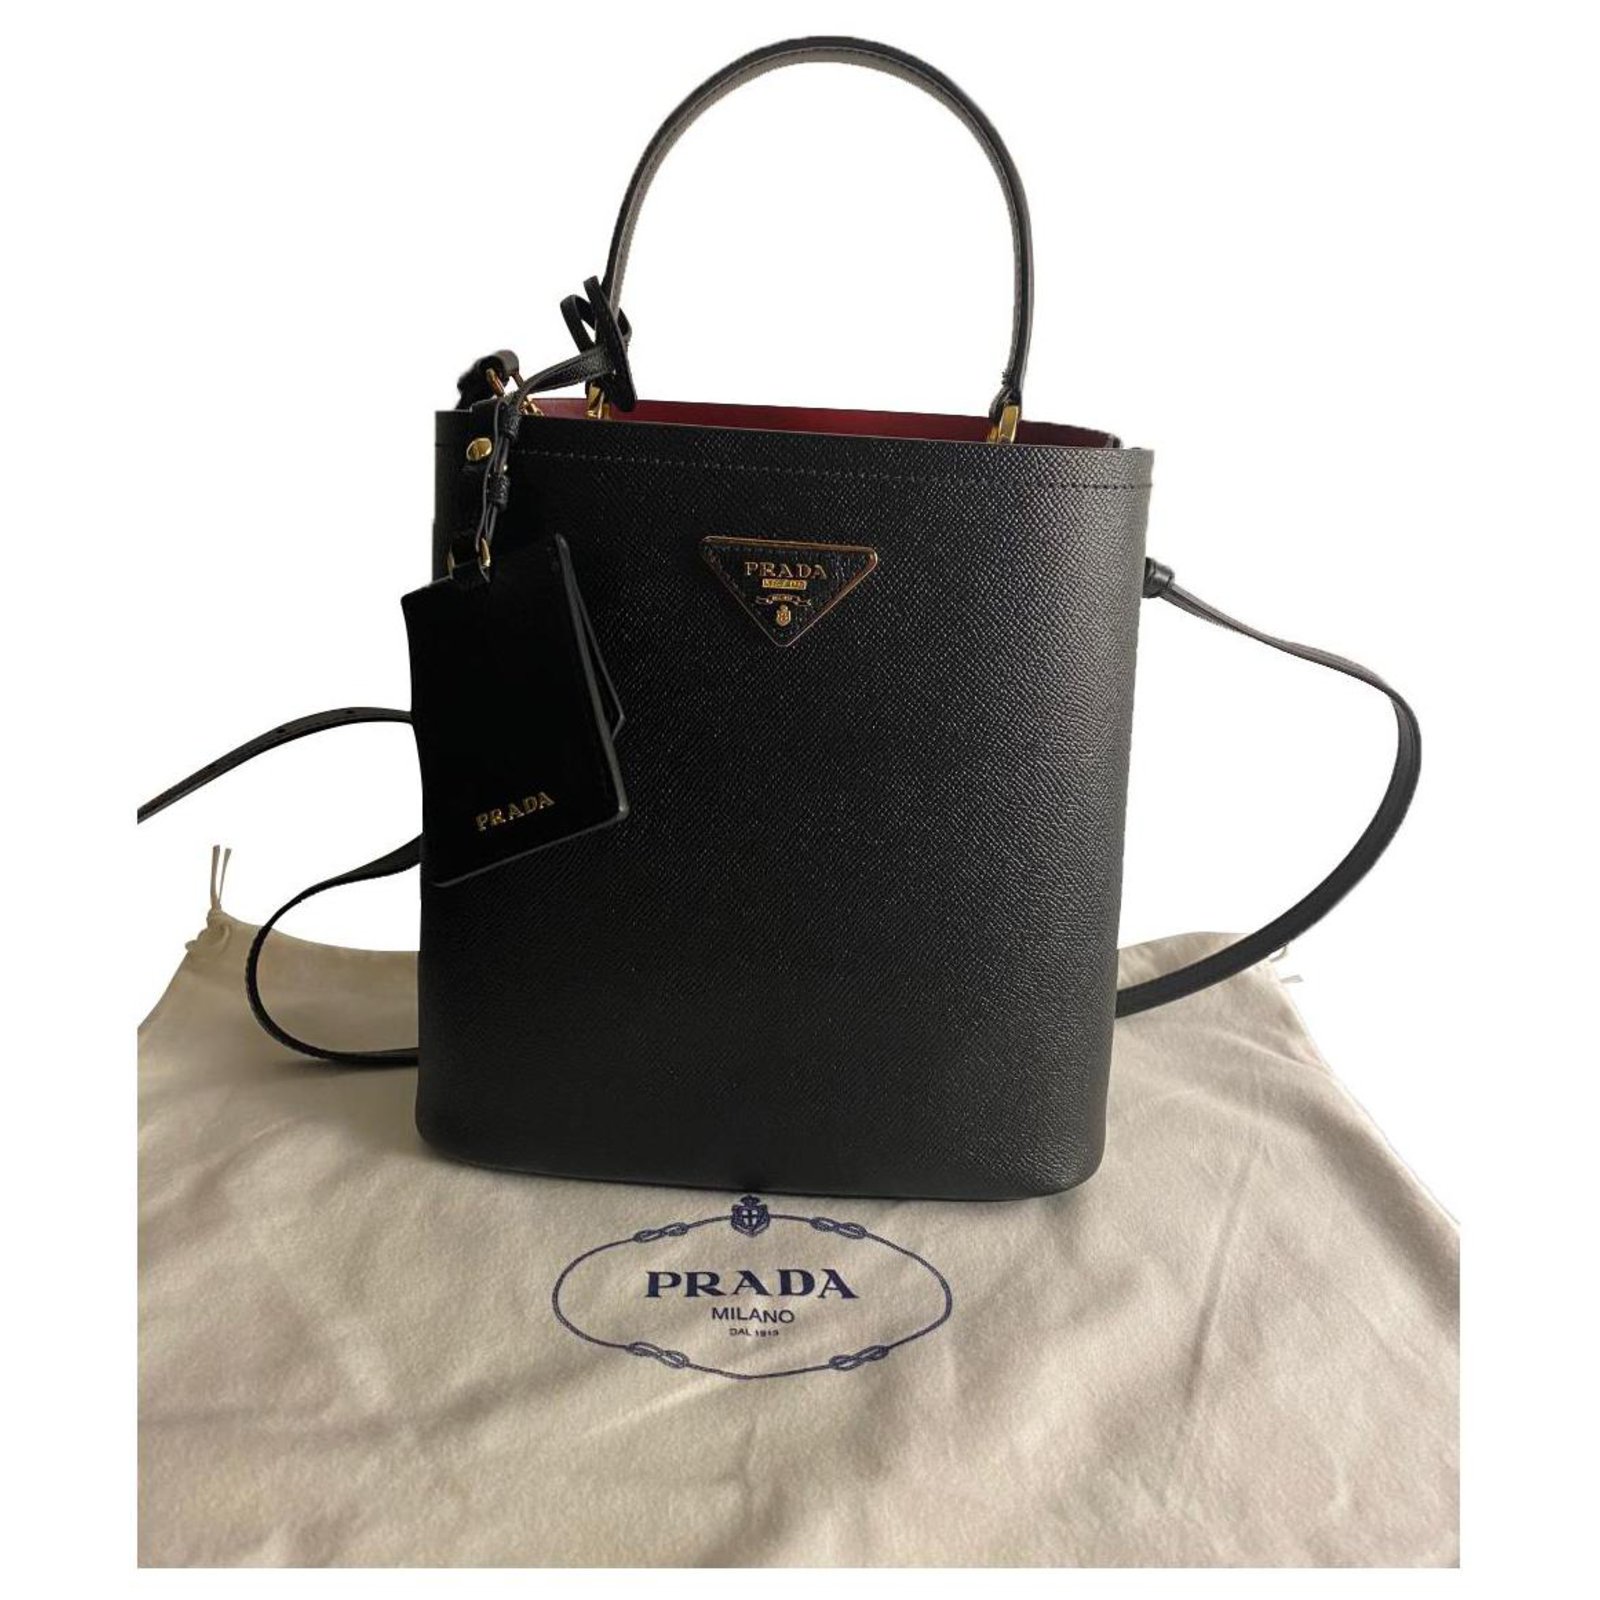 Prada Panier Saffiano Leather Small Bag